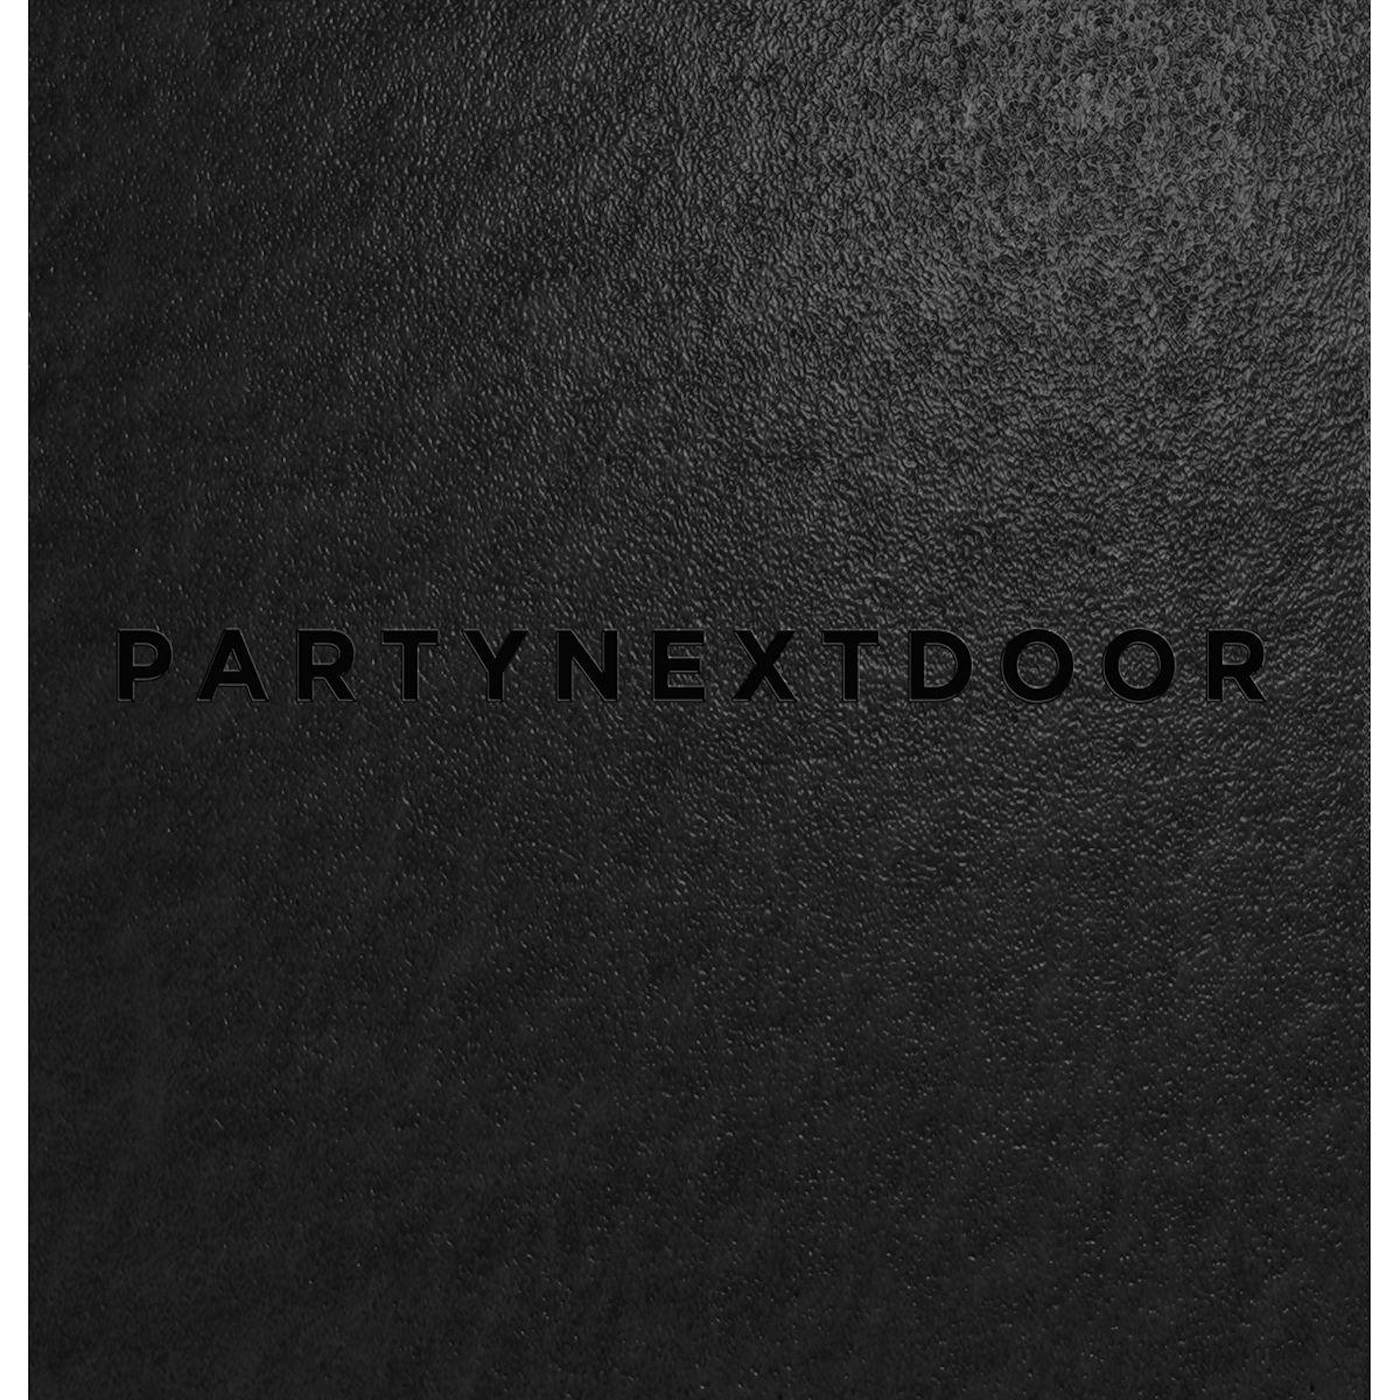  Partynextdoor S/T Vinyl Record